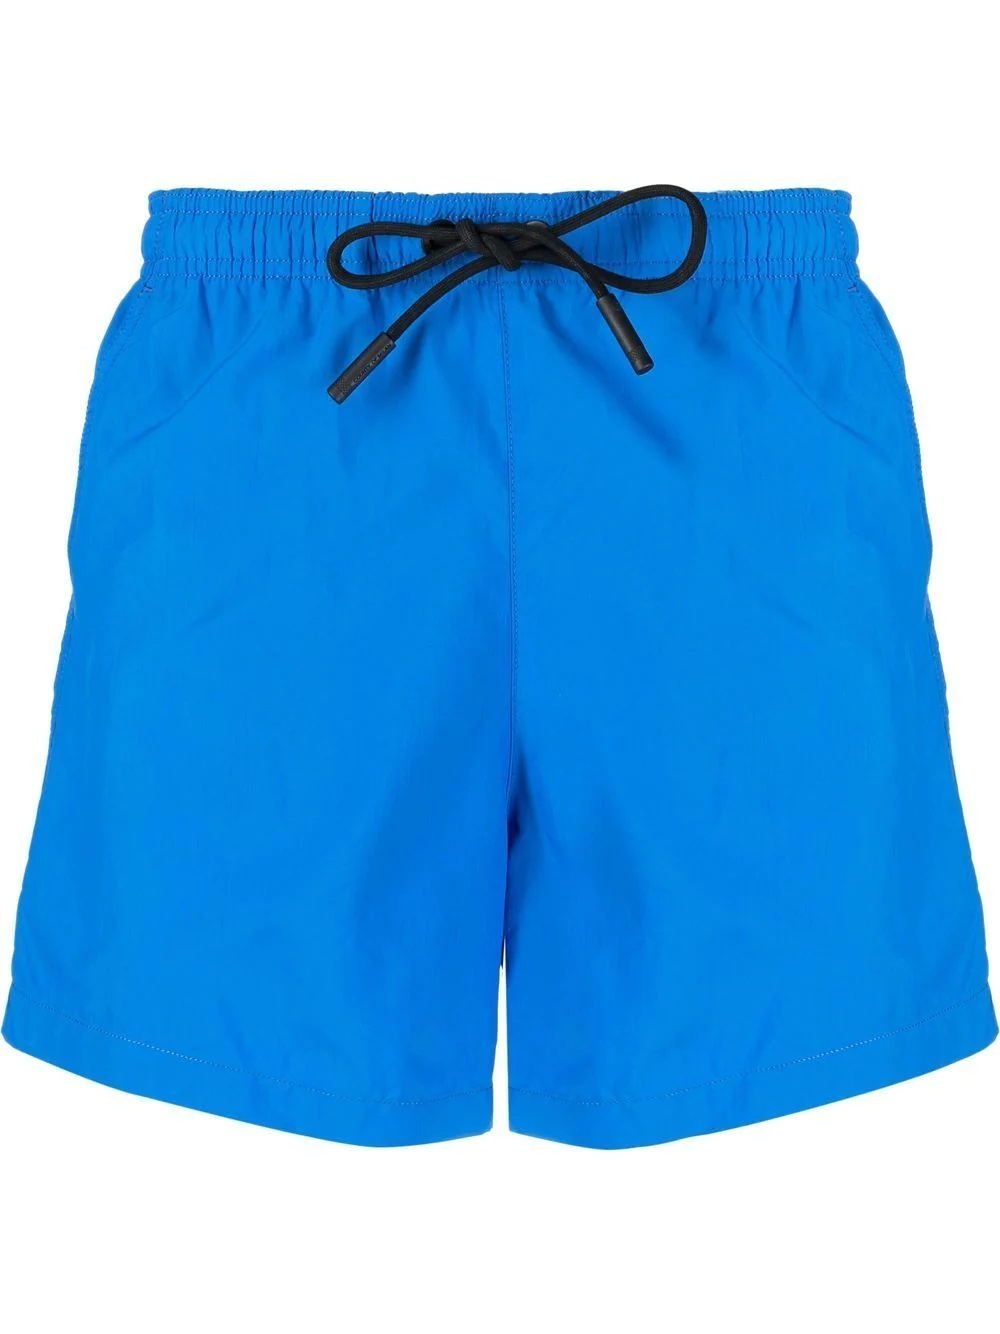 drawstring swim shorts - 1